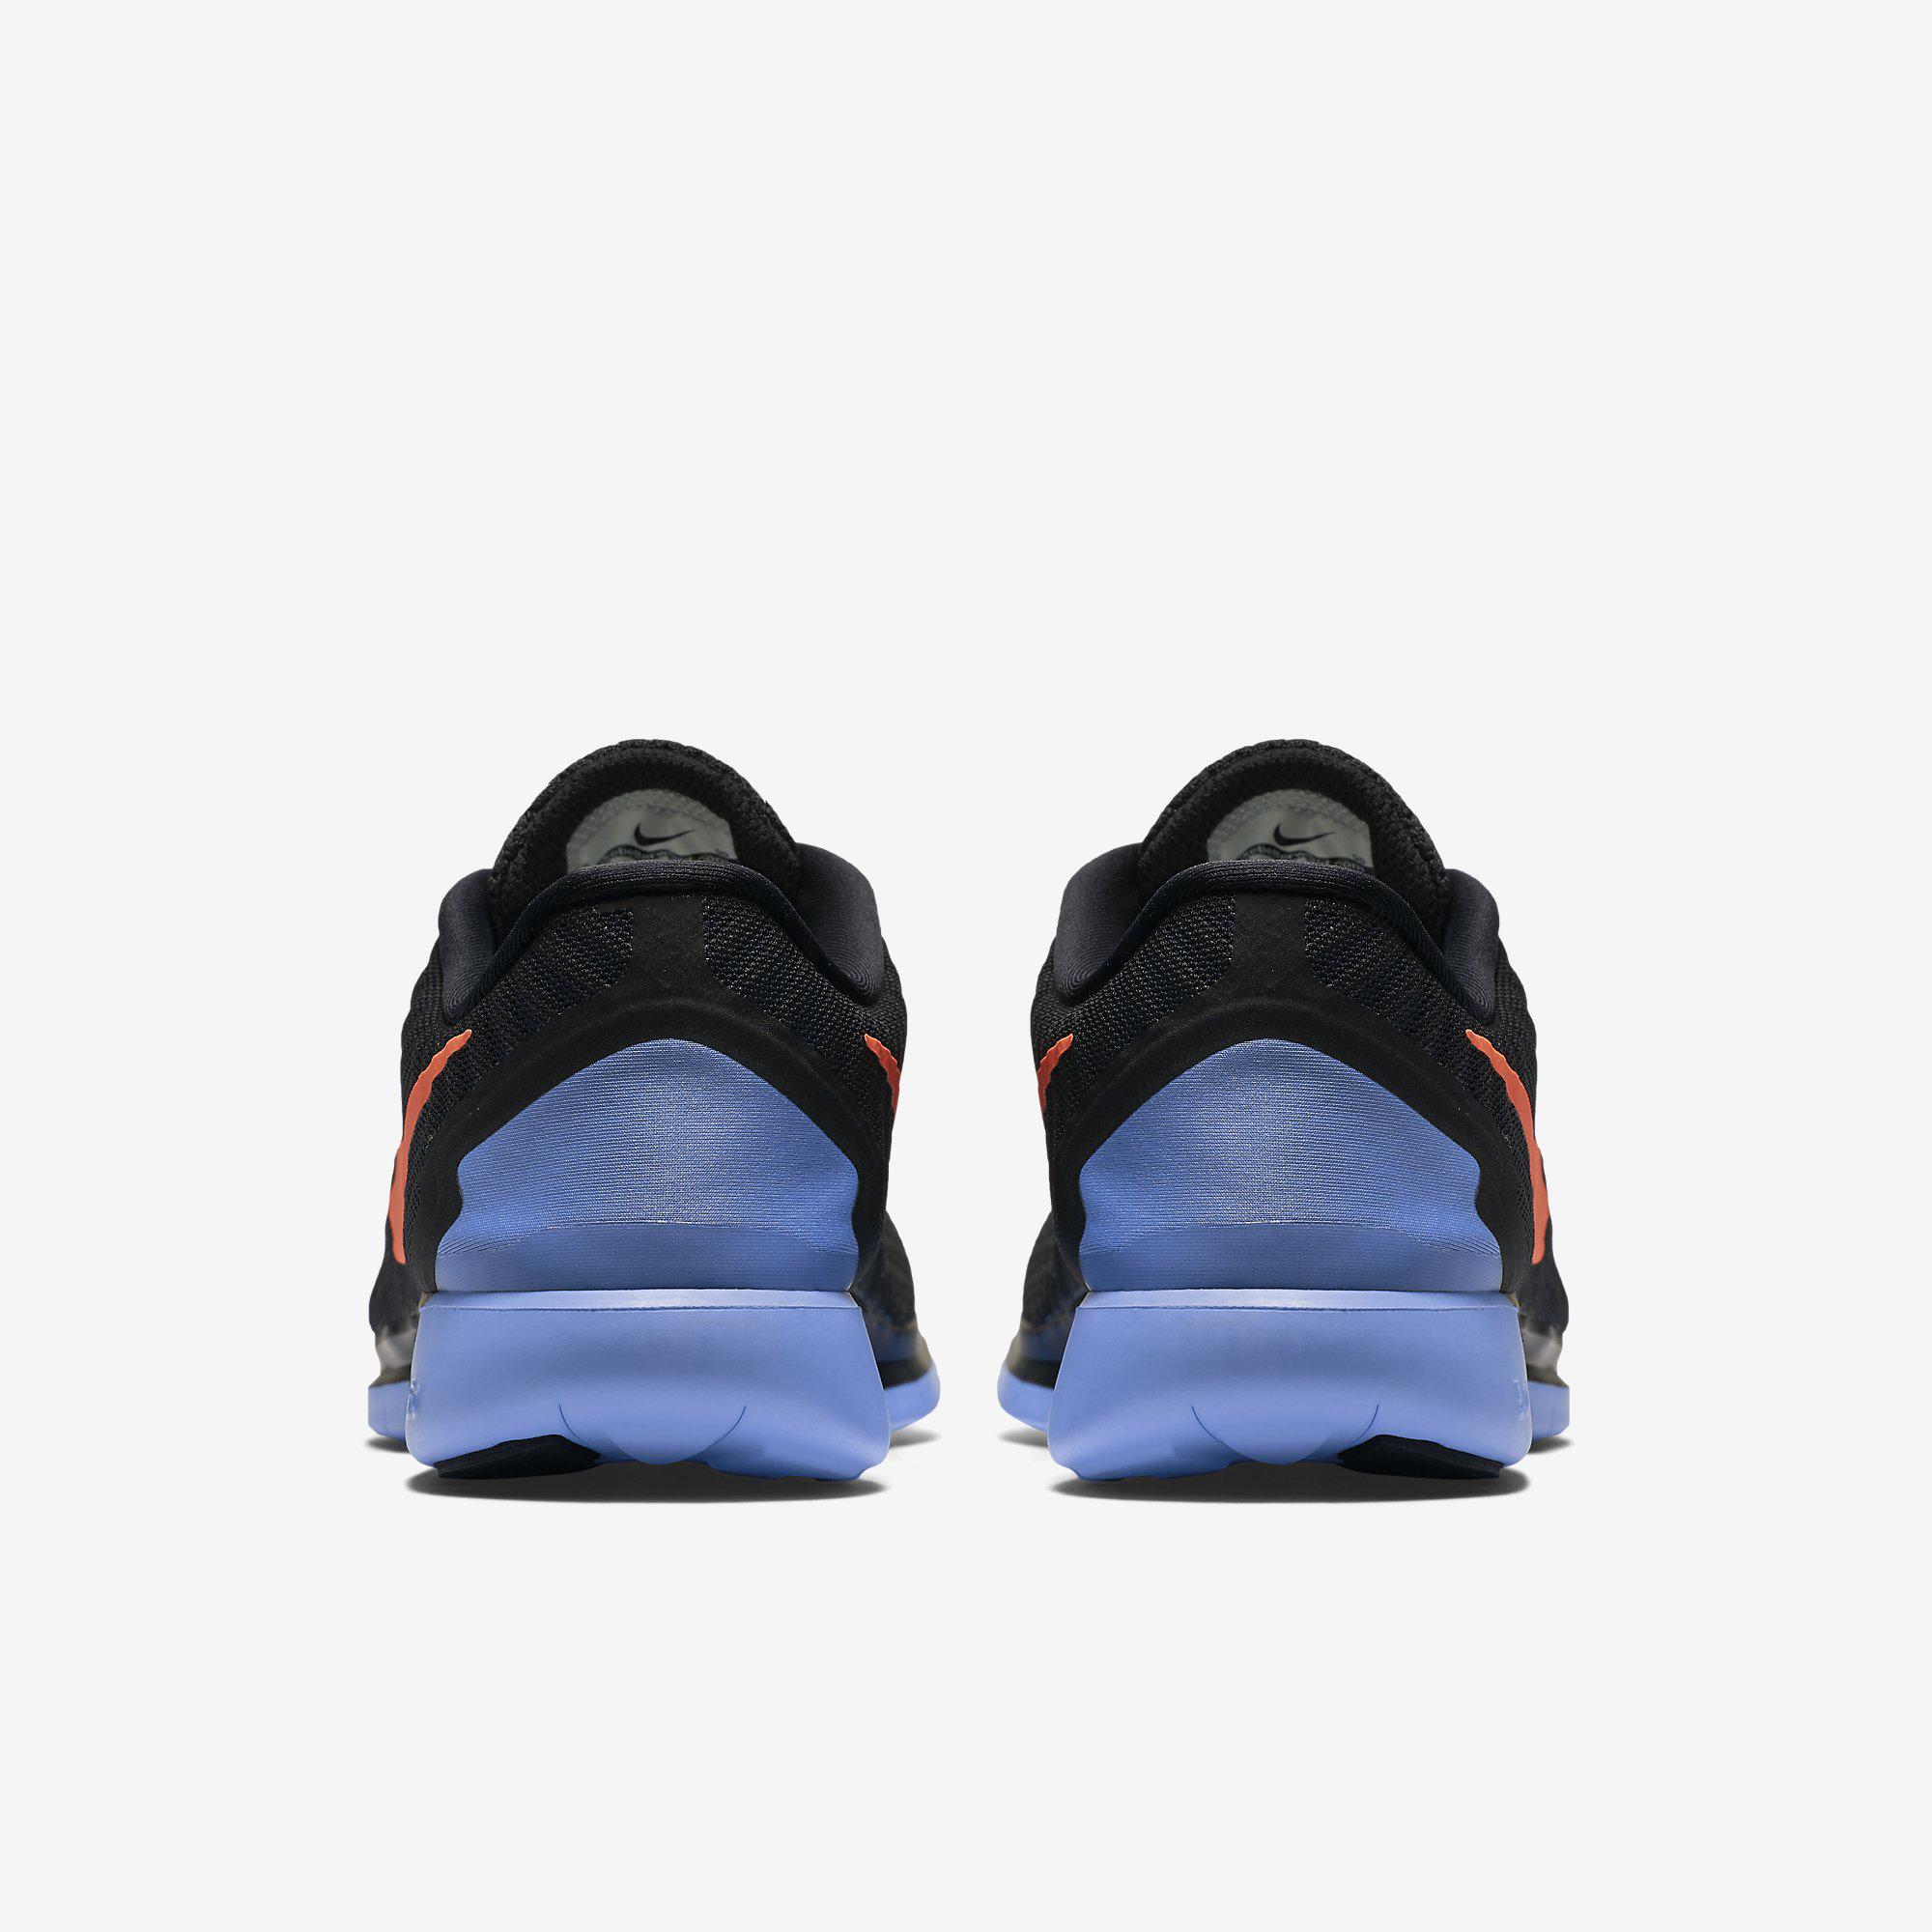 Nike Womens Free 5.0 Running Shoes - Black/Blue - Tennisnuts.com